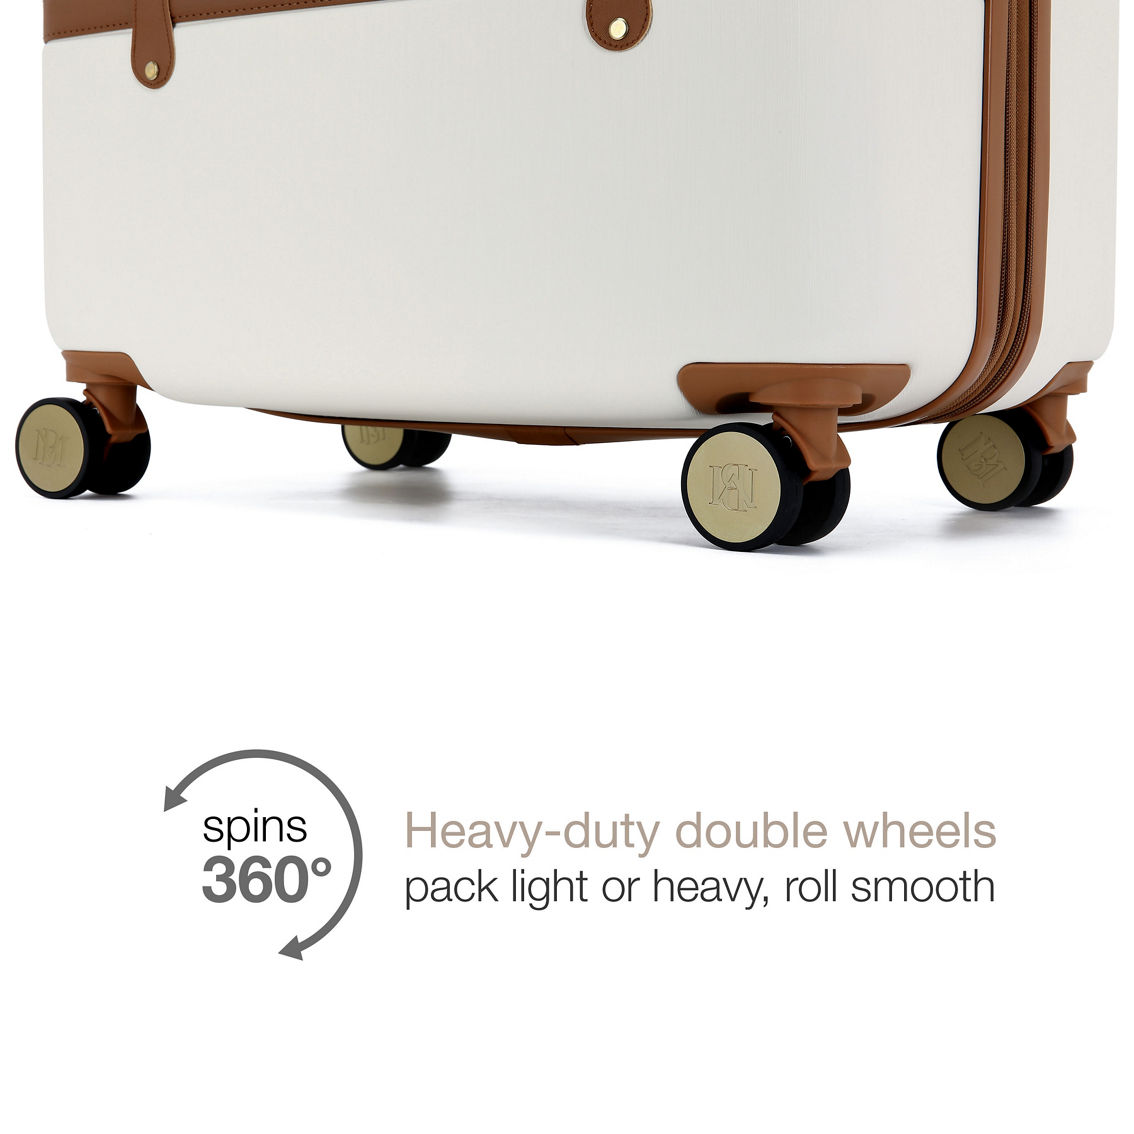 BADGLEY MISCHKA Grace 3 Piece Expandable Retro Luggage Set - Image 3 of 5